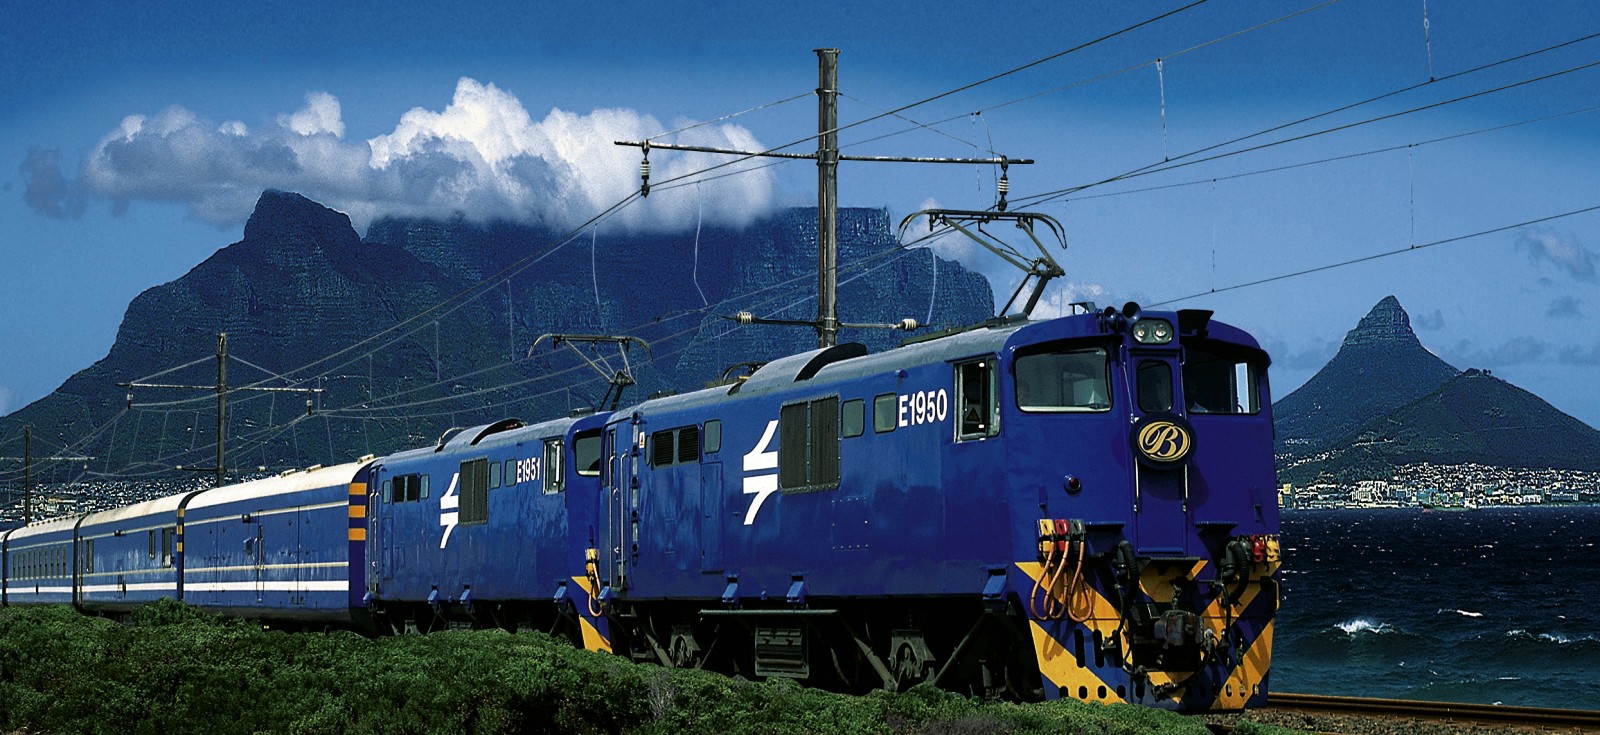 アフリカ最高の豪華列車 ブルートレイン で行く27時間の極上の汽車旅 サライ Jp 小学館の雑誌 サライ 公式サイト